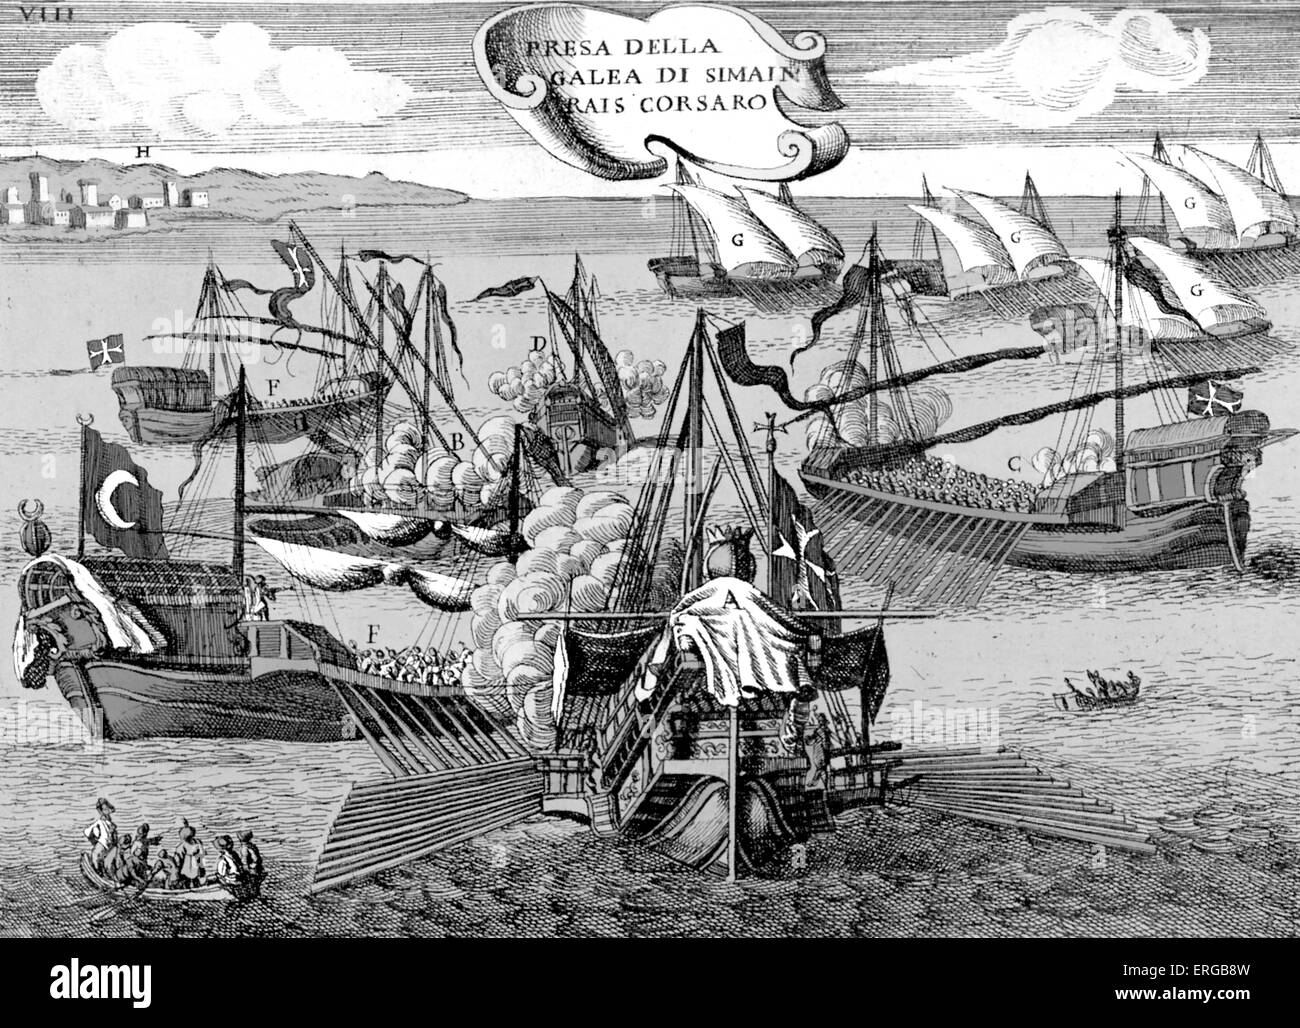 Kampf zwischen toskanischen Galeeren und Barbary Piraten. Mediterrane Piraten. Bildunterschrift lautet: Presa della Galea di Simain Rais Stockfoto